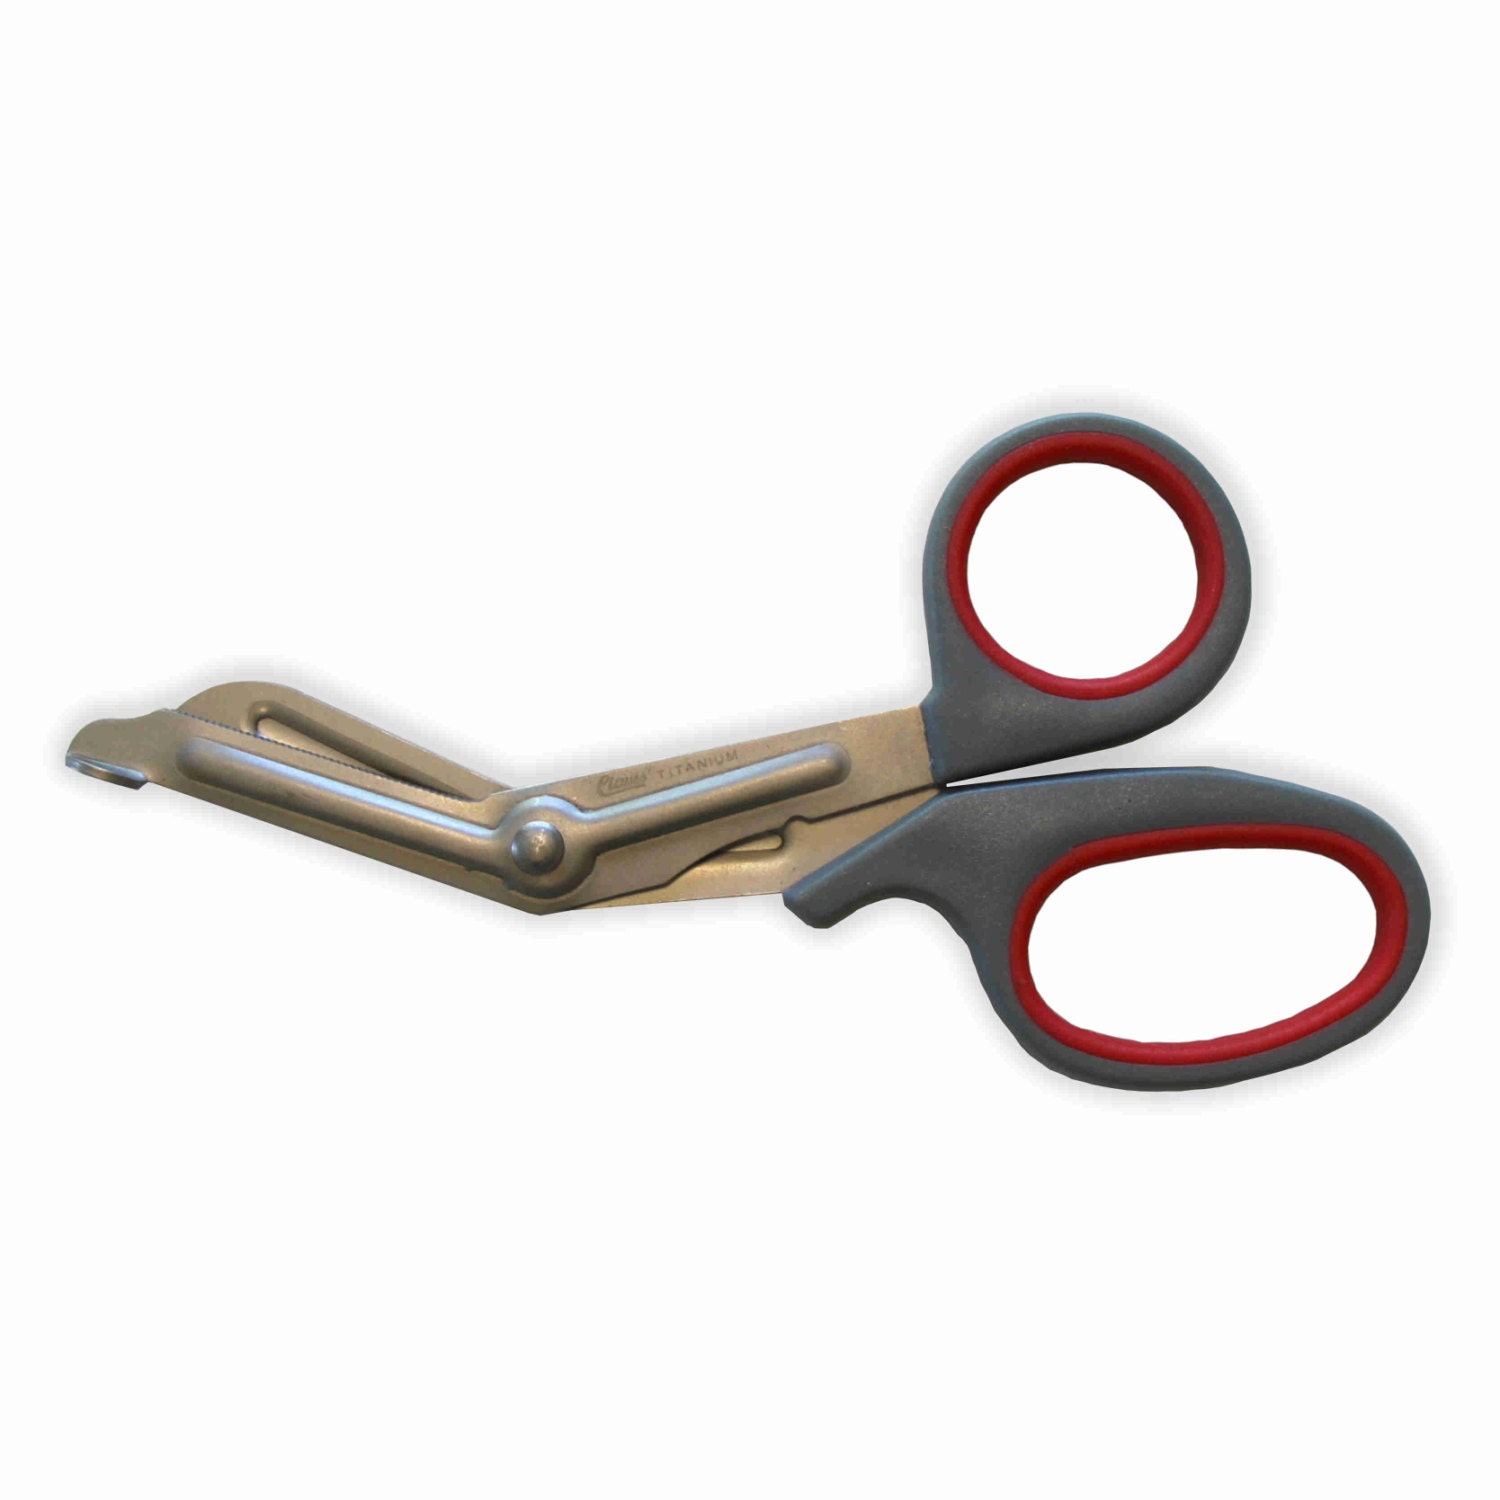 Trauma Scissors/shears EMT Nurse Paramedic First Aid Scissors 7.25